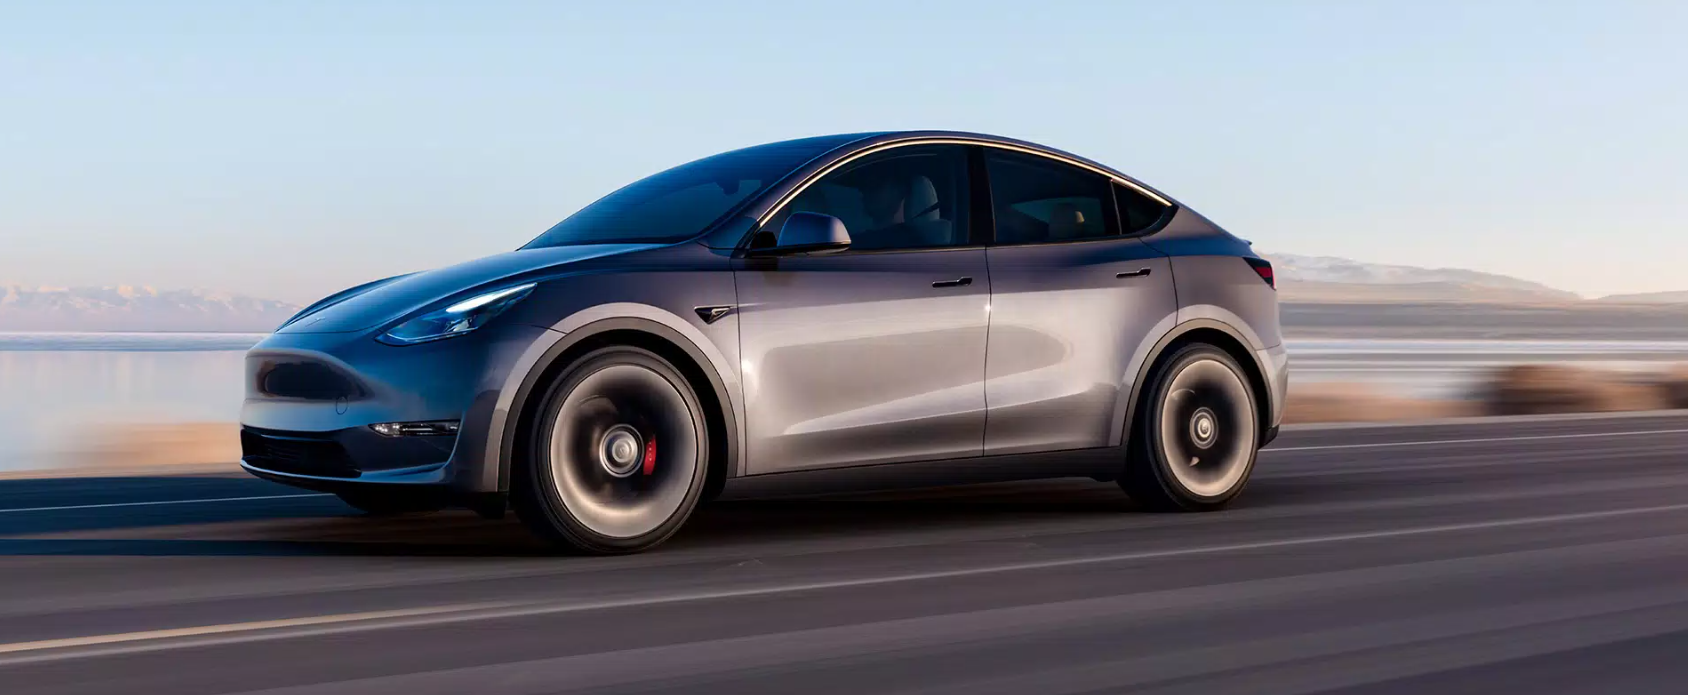 乘风破浪 遇见未来新能源汽车 Electric Vehicle 之特斯拉 Tesla 提车必须知道的十个流程 Taylorshi 博客园